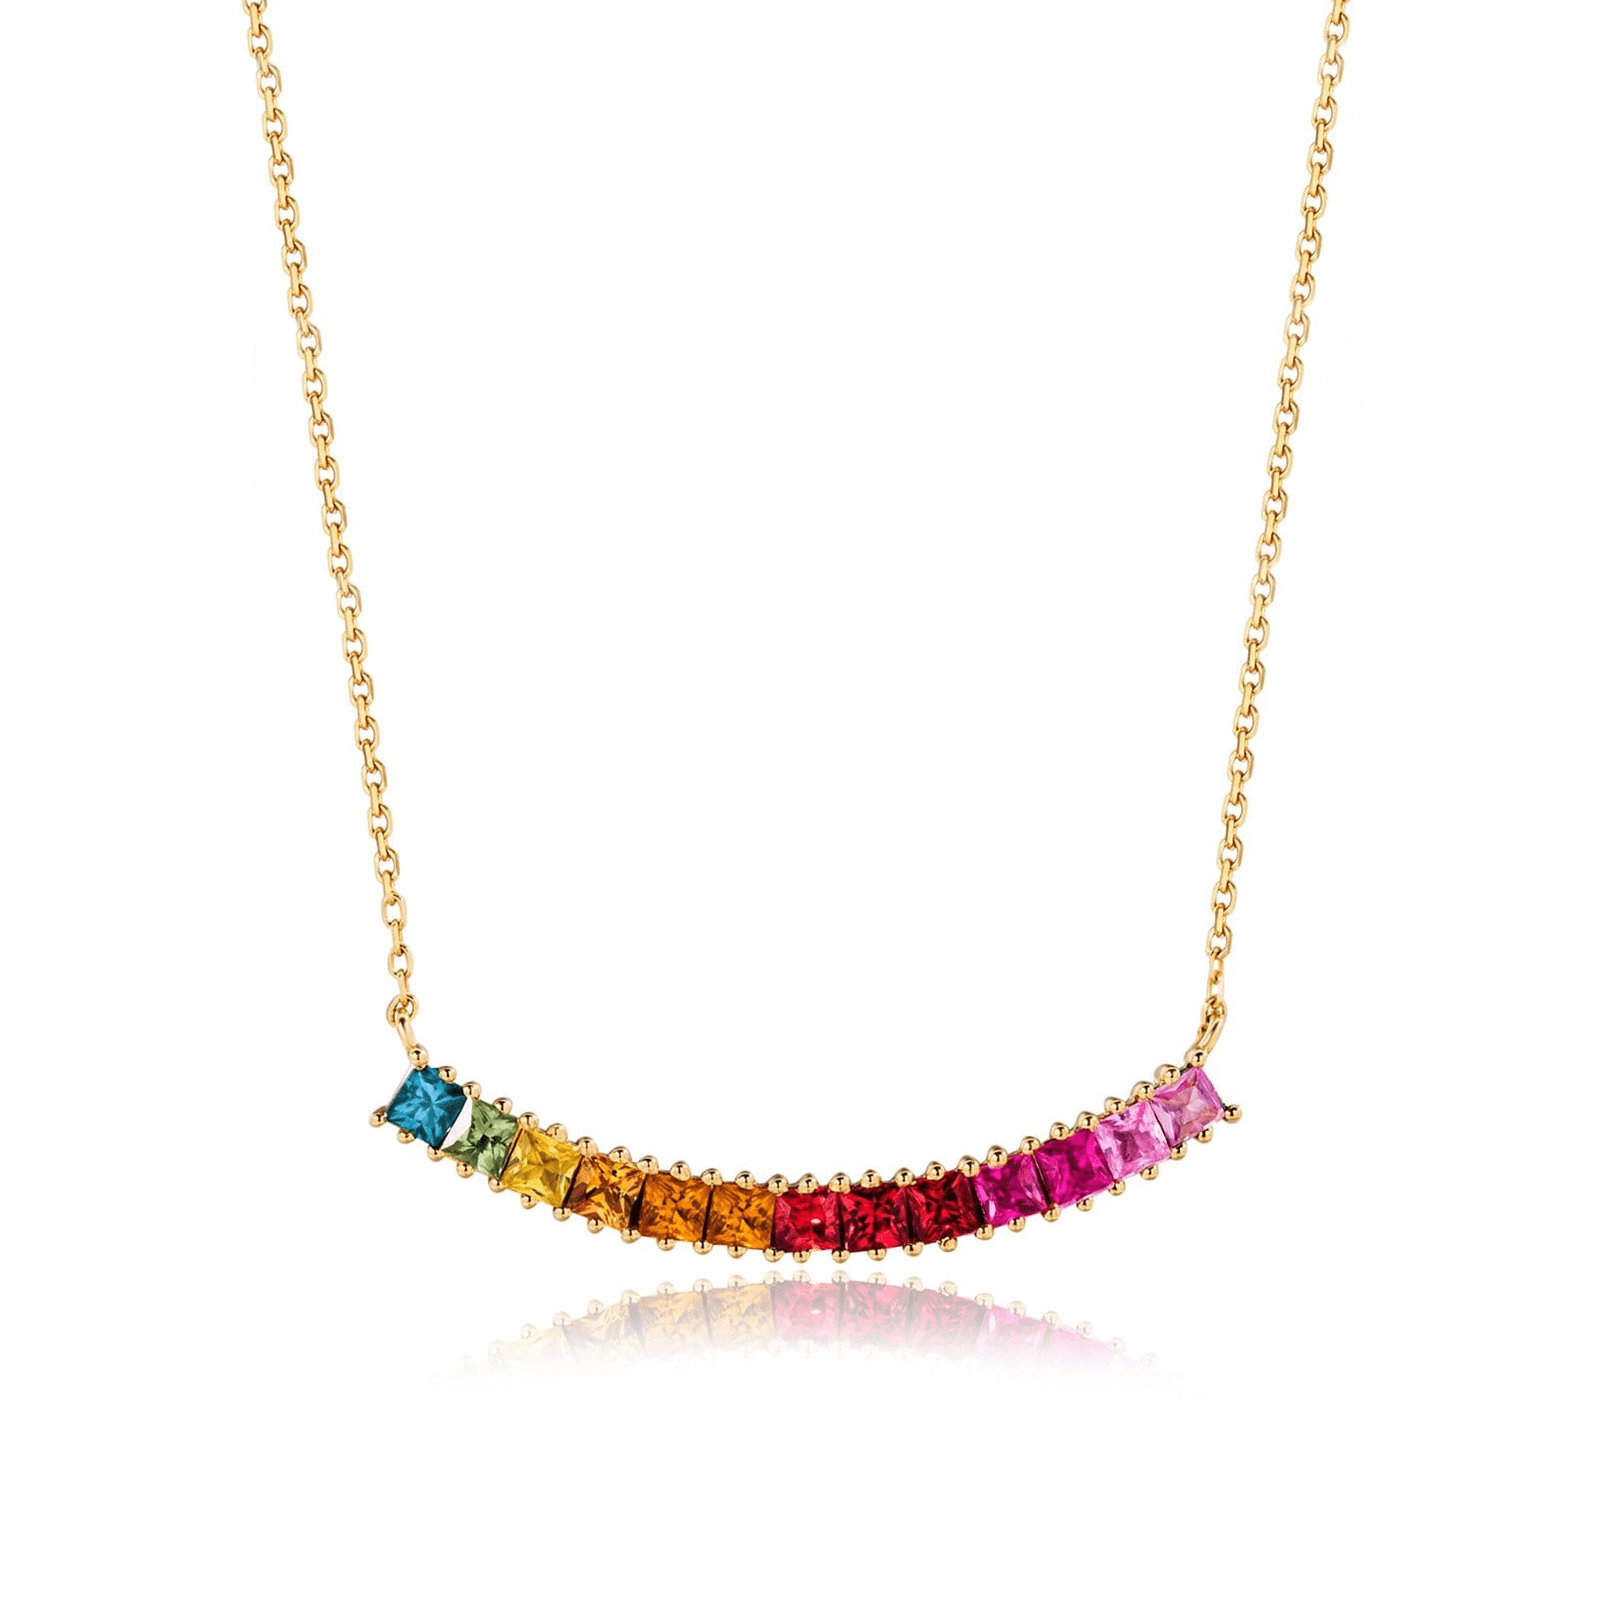 FANCIME "Rainbow Smile" Multi Gemstone 18K Yellow Gold Necklace Main